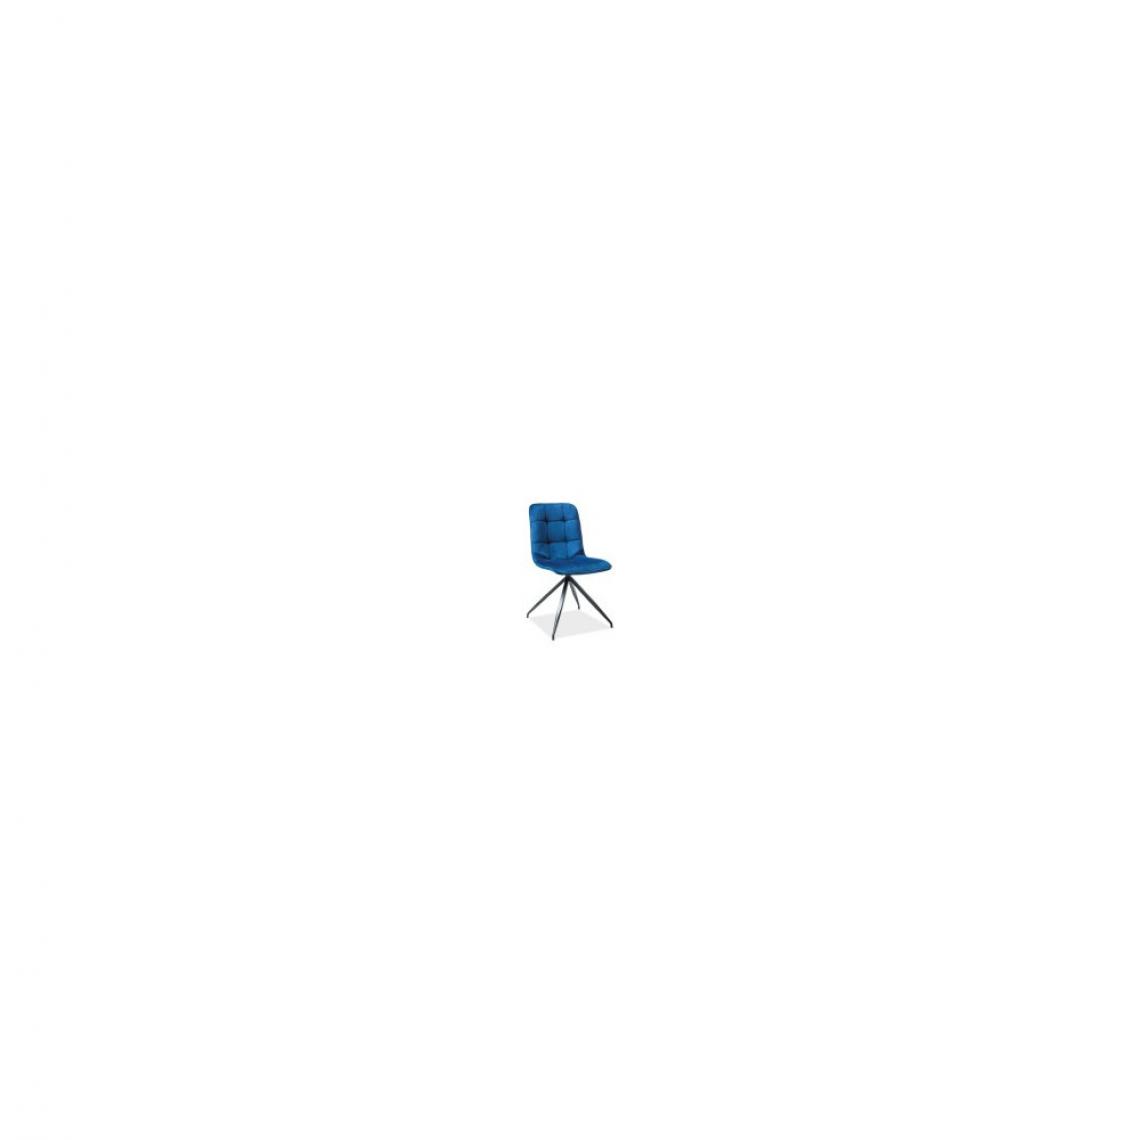 Ac-Deco - Chaise - Texo - L 45 cm x l 42 cm x H 87 cm - Bleu - Chaises